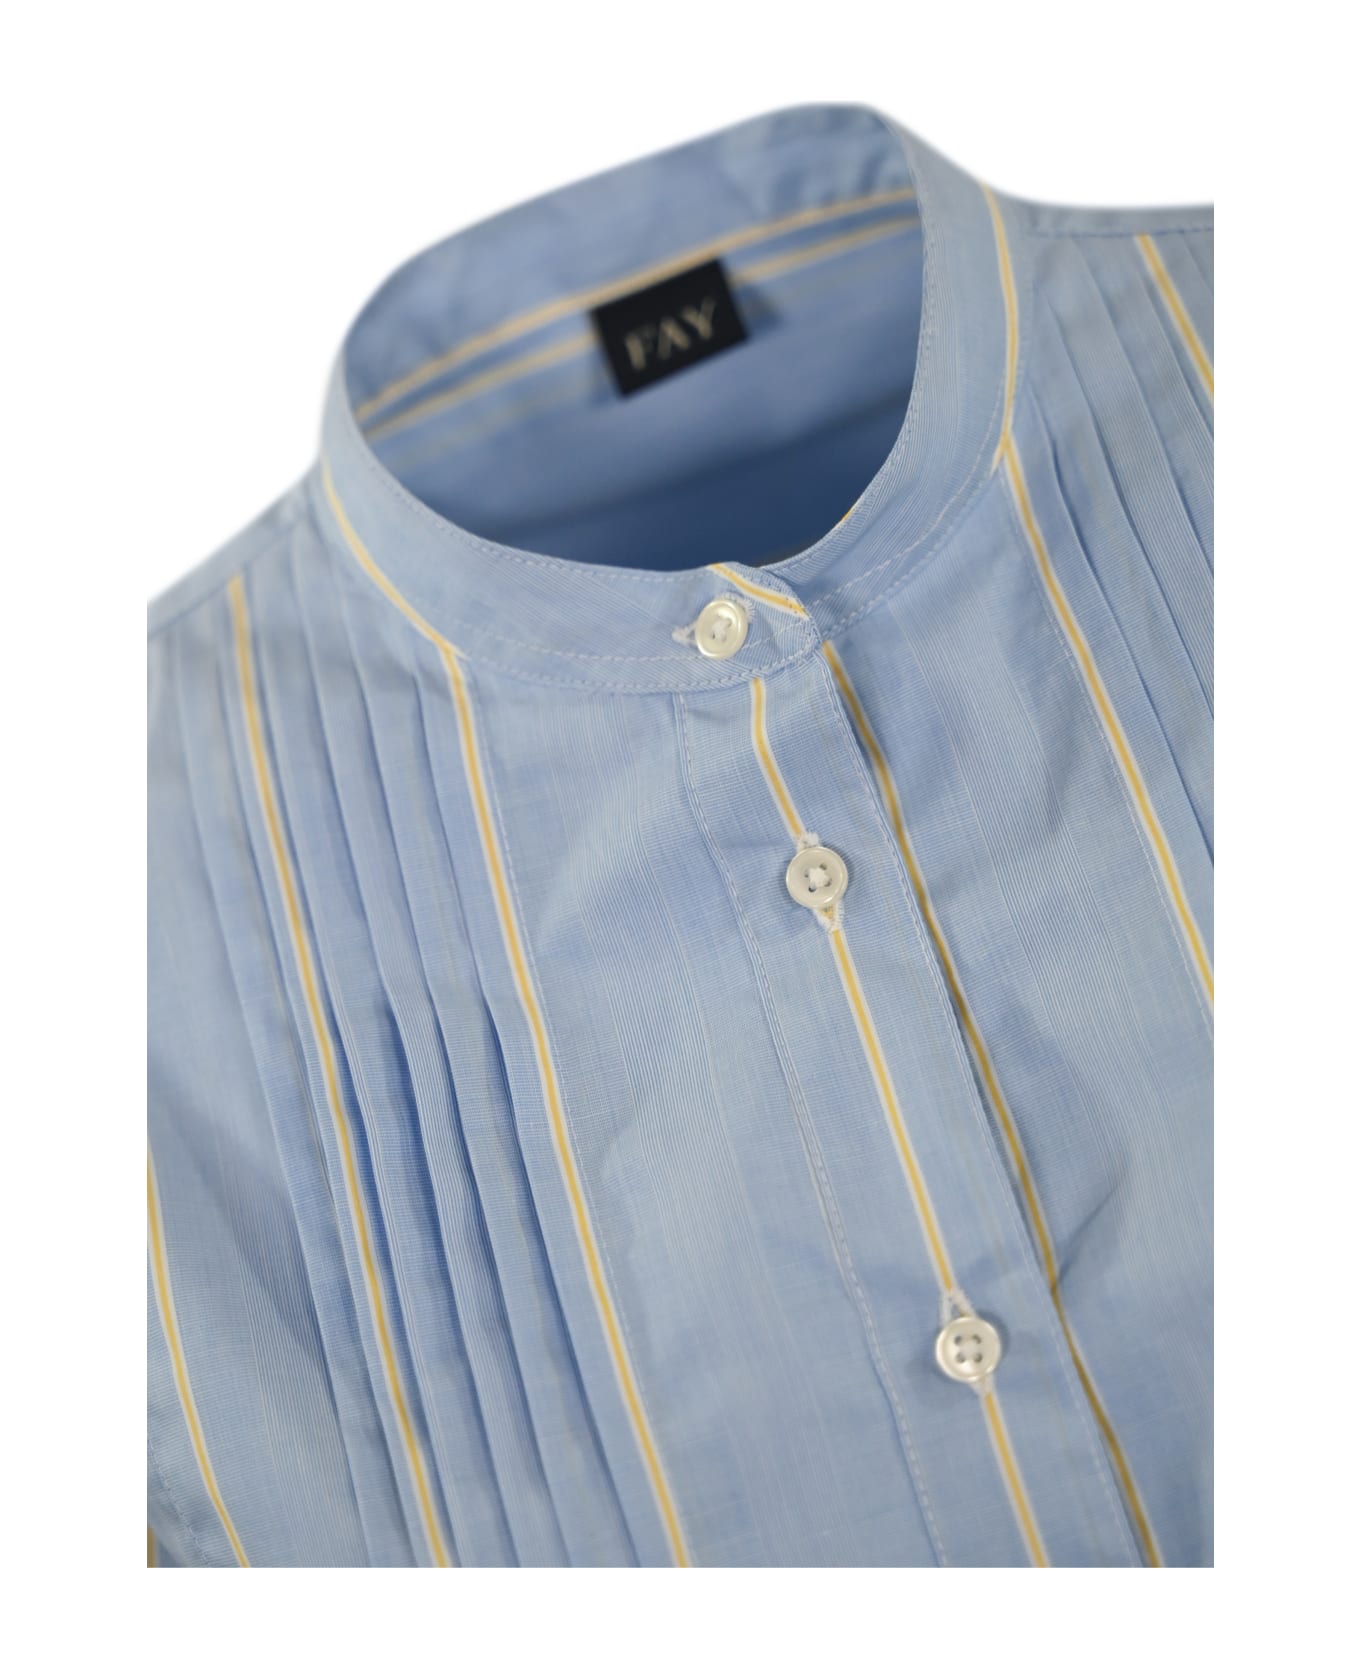 Fay Poepelin Shirt With Mandarin Collar - (azzurro)+(miele) シャツ